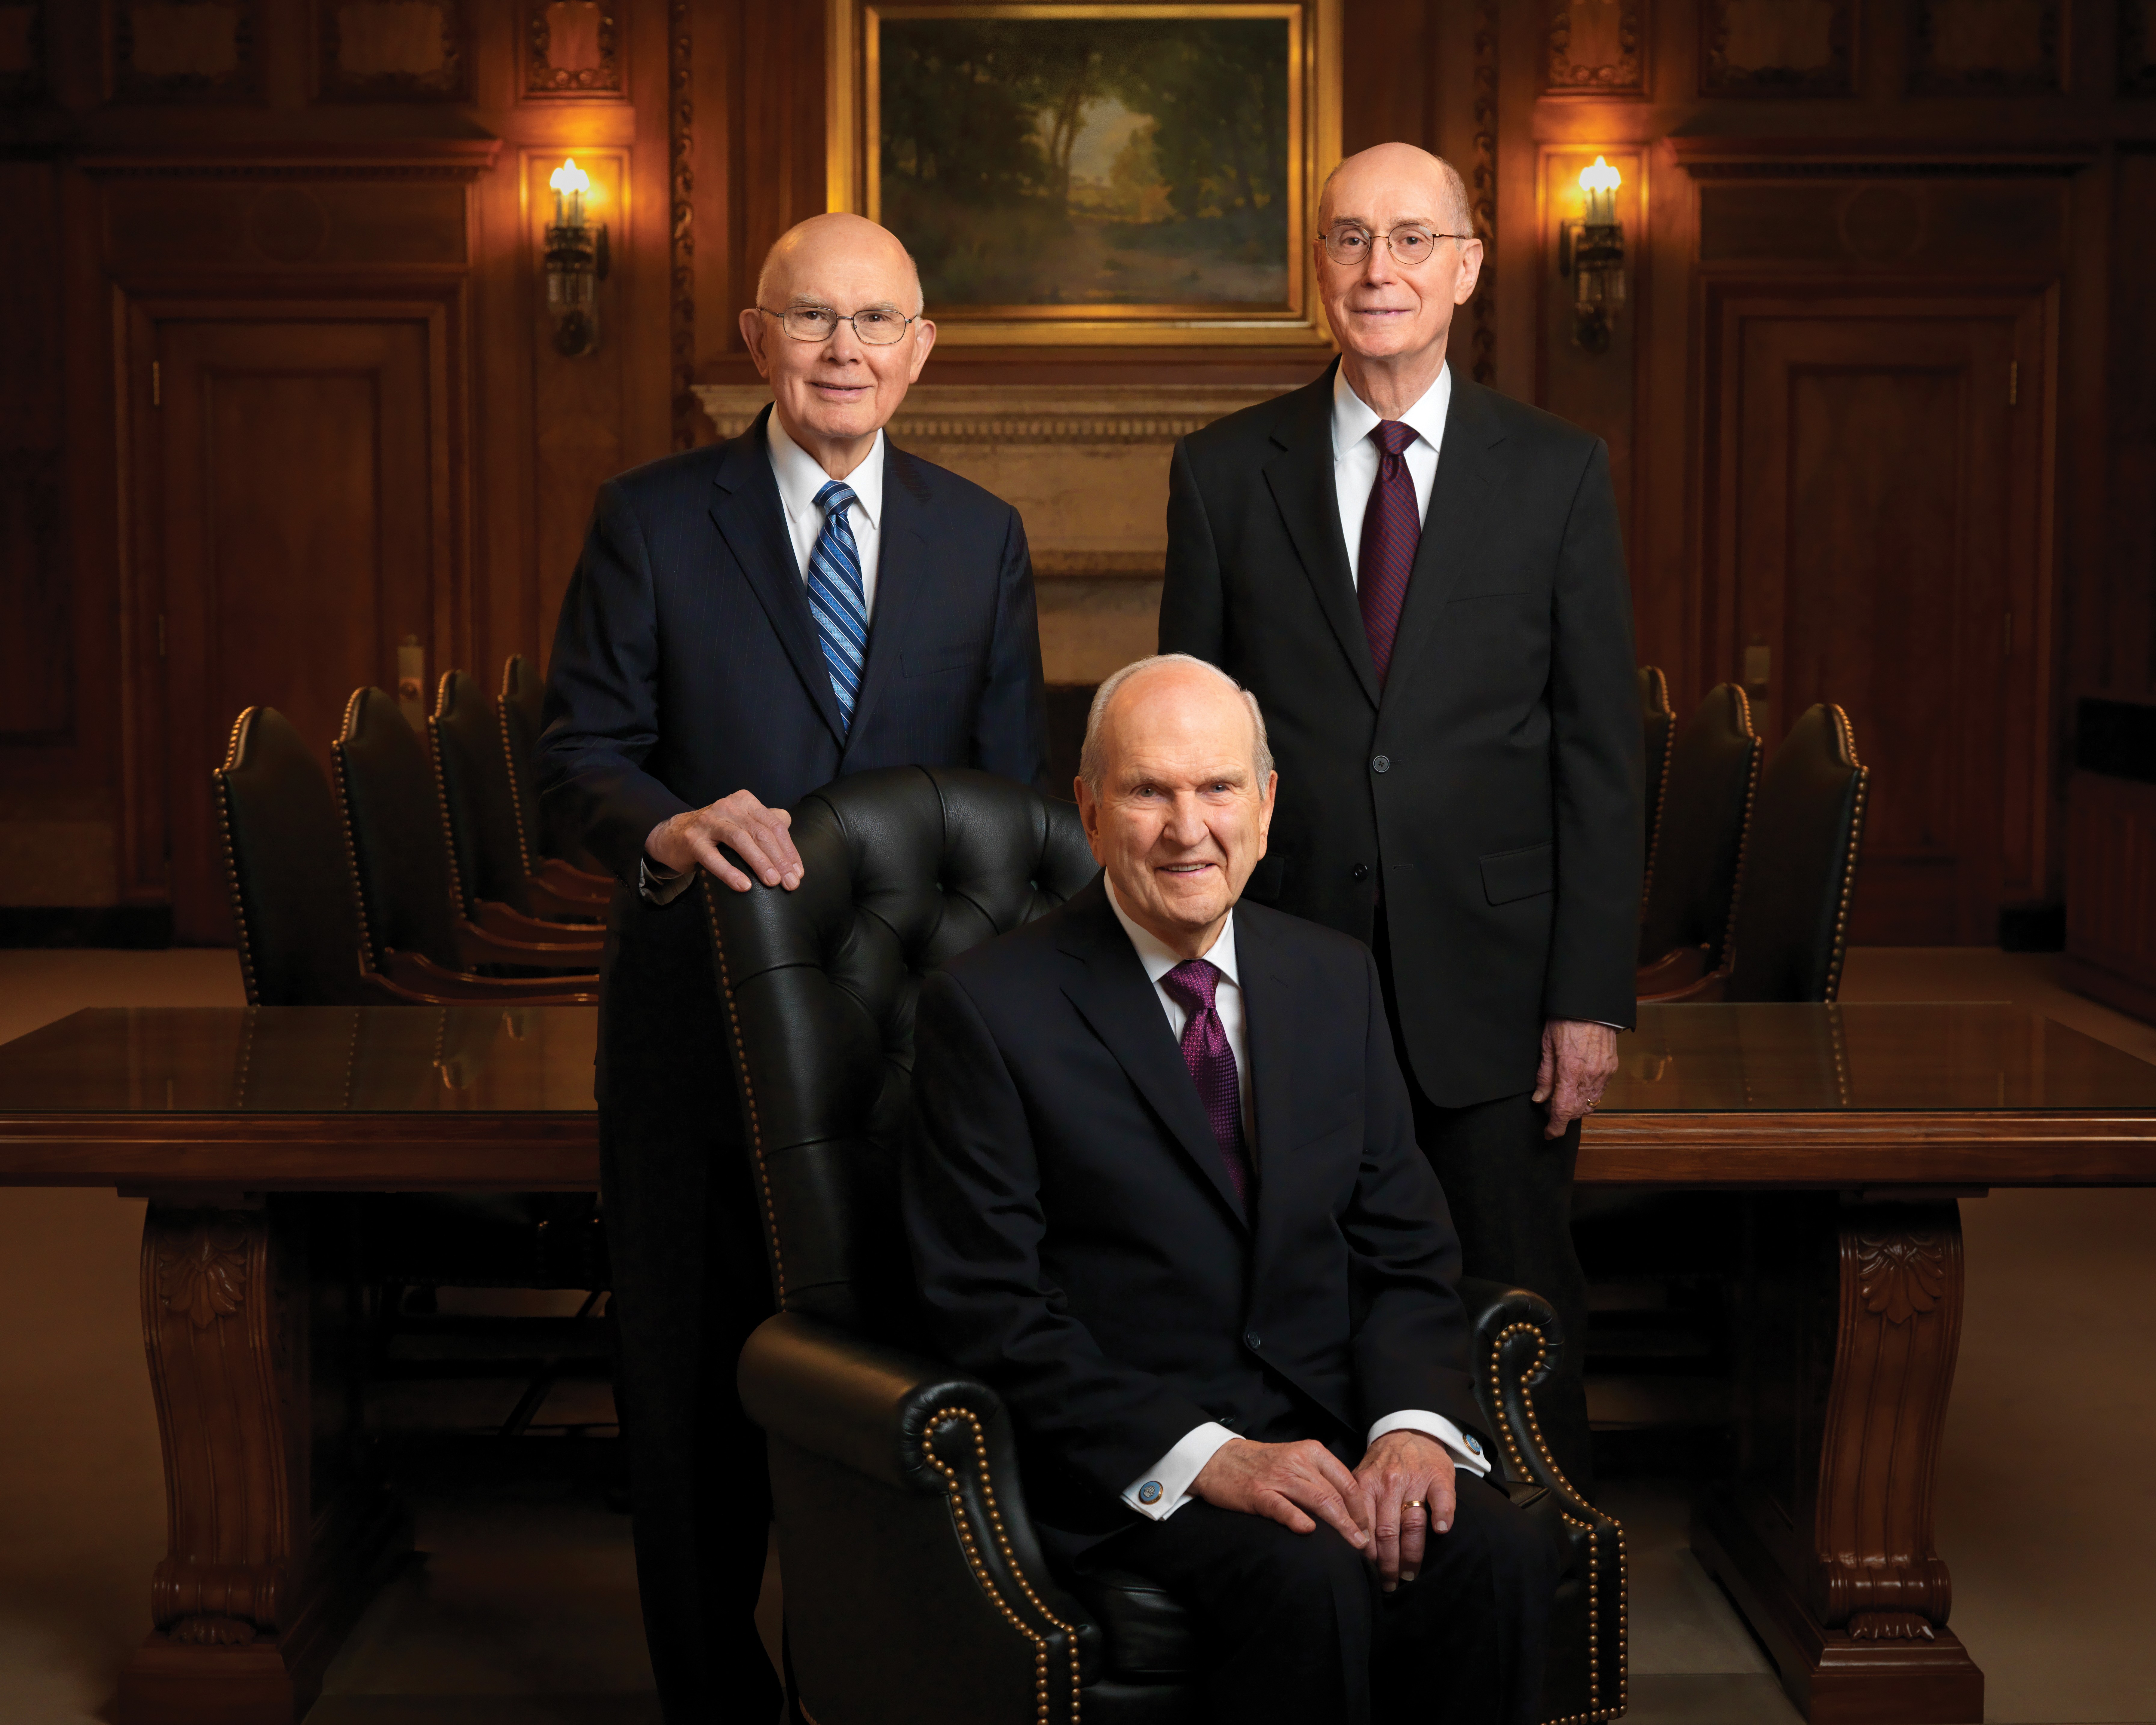 Porträtfoto der Ersten Präsidentschaft: Präsident Russell M. Nelson sitzt auf einem Stuhl, Präsident Dallin H. Oaks und Präsident Henry B. Eyring stehen hinter ihm